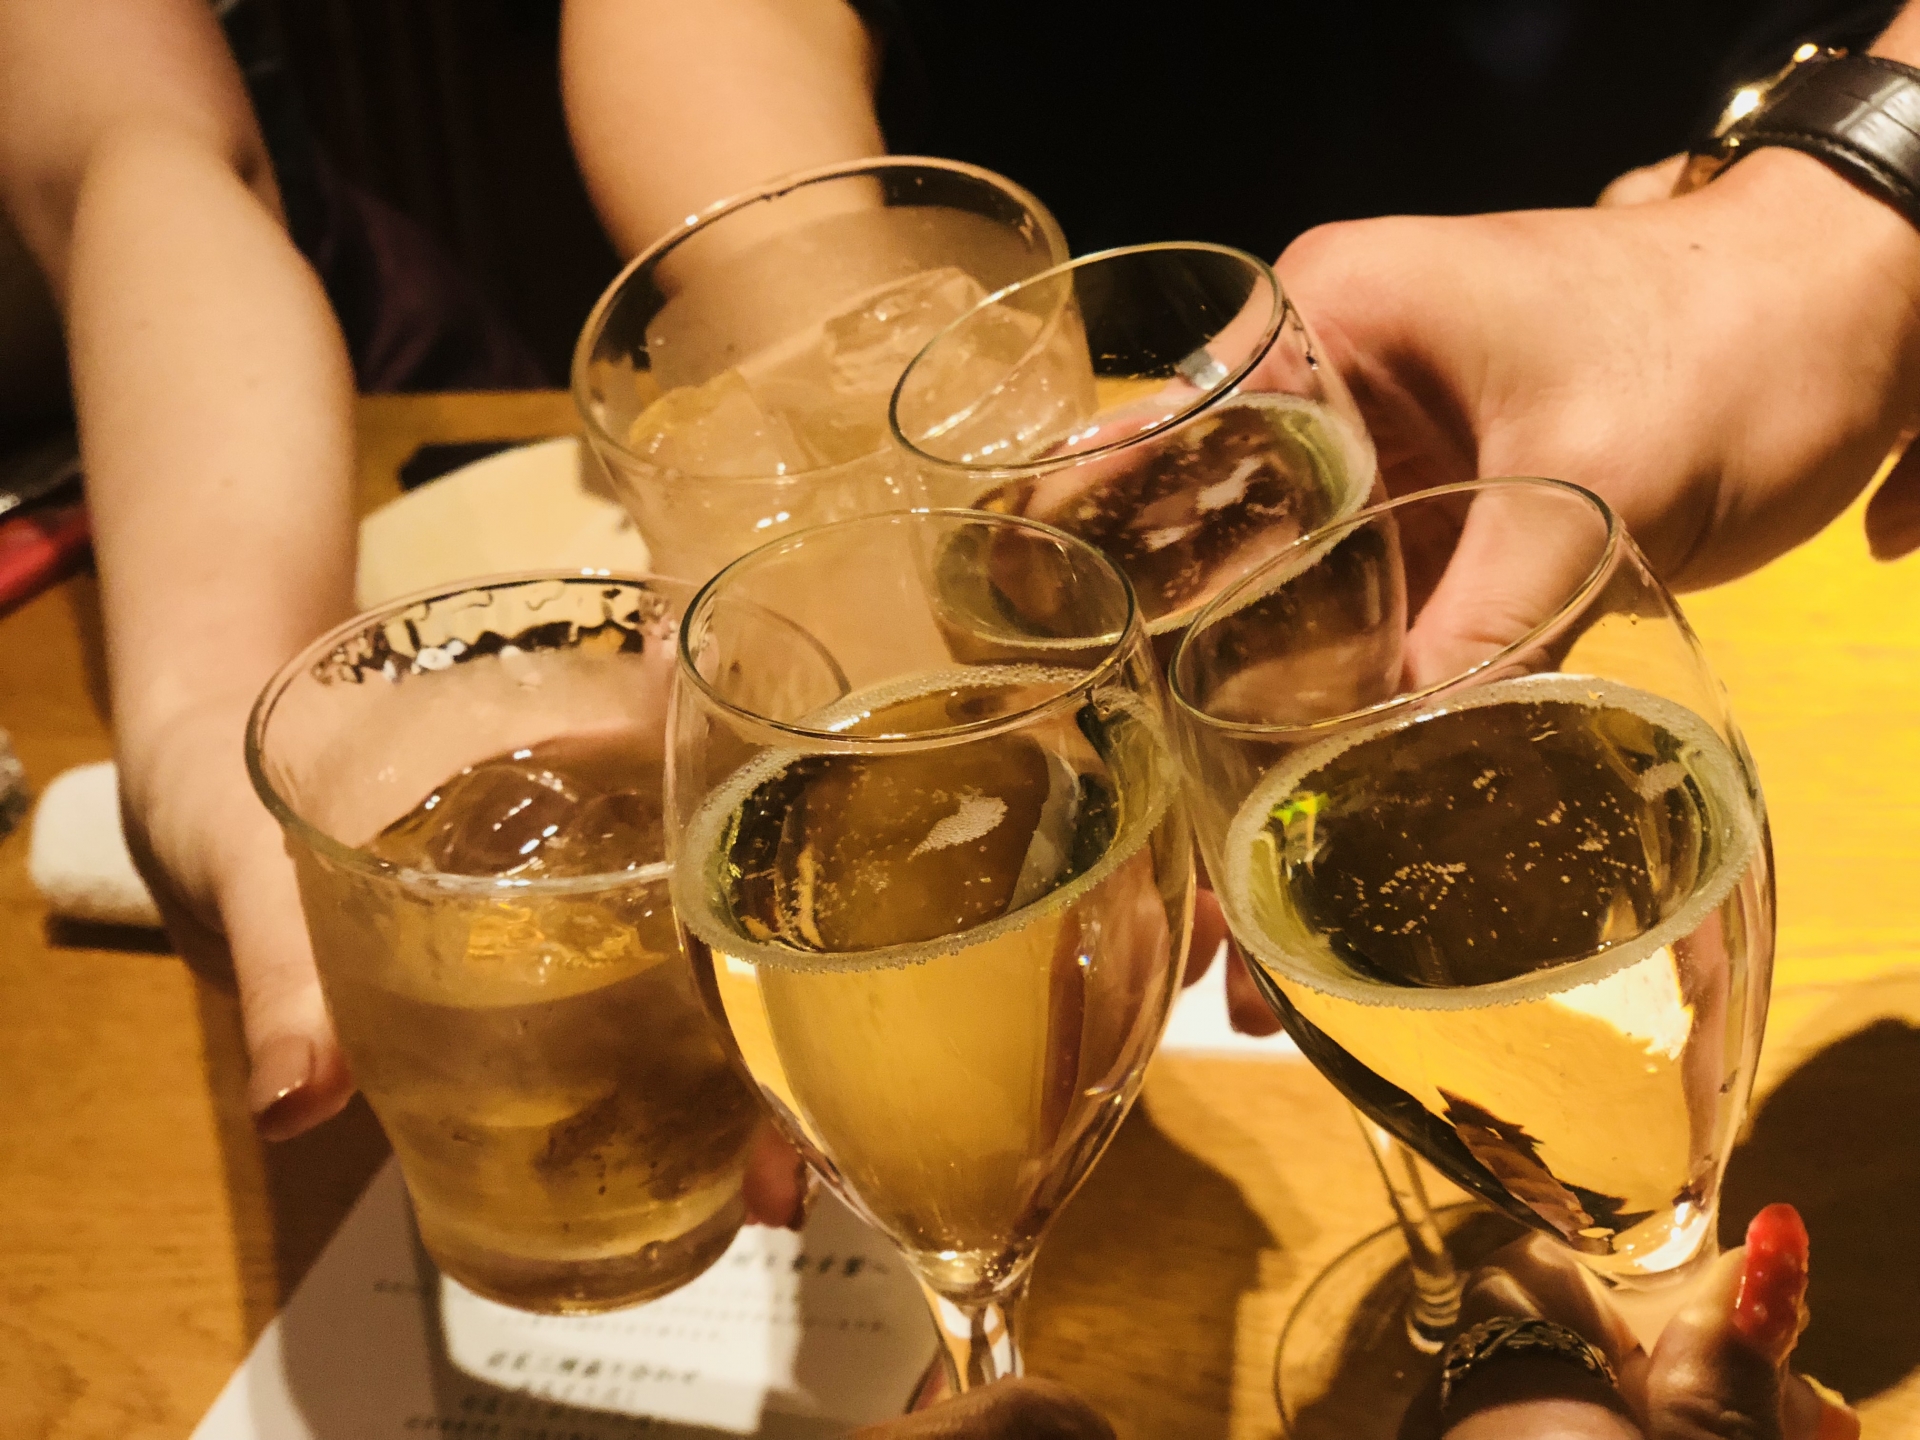 櫻井の相席居酒屋などで開催するパーティー・出会いのイベント情報